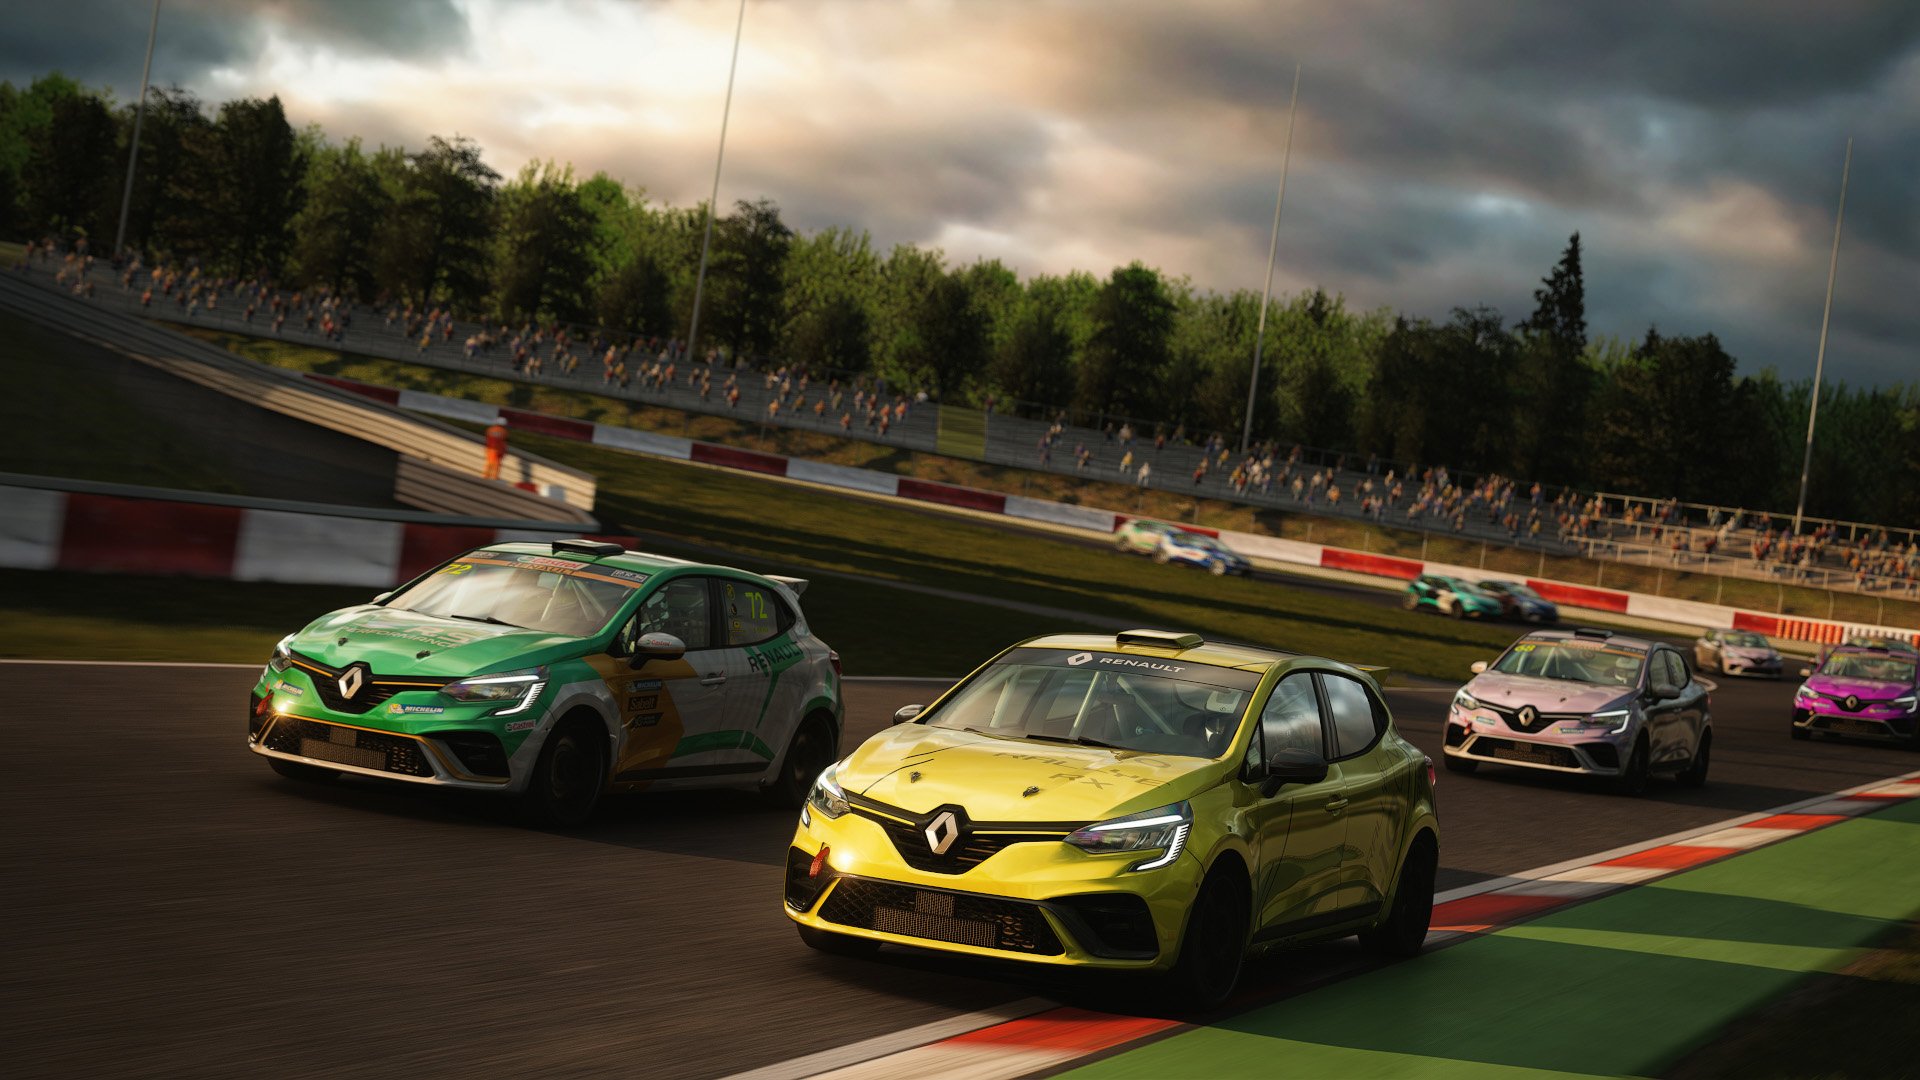 More information about "Assetto Corsa: campionato Renault Clio RS Cup 4FUN Summer, stasera il round 1 in diretta!"